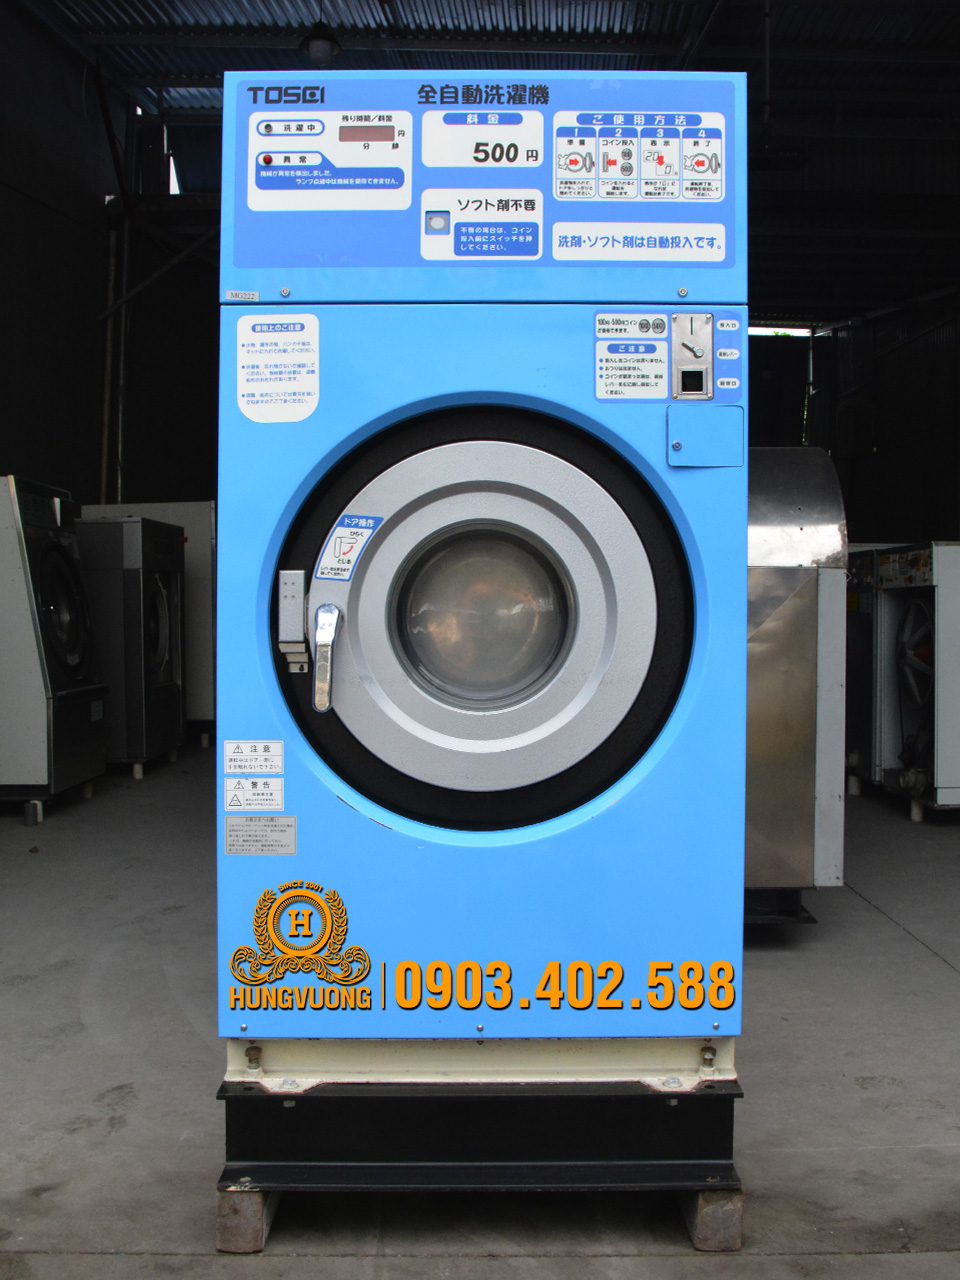 Mặt trước máy giặt công nghiệp TOSEI CW-12, 12kg, chống rung, biến tần, Nhật Bản